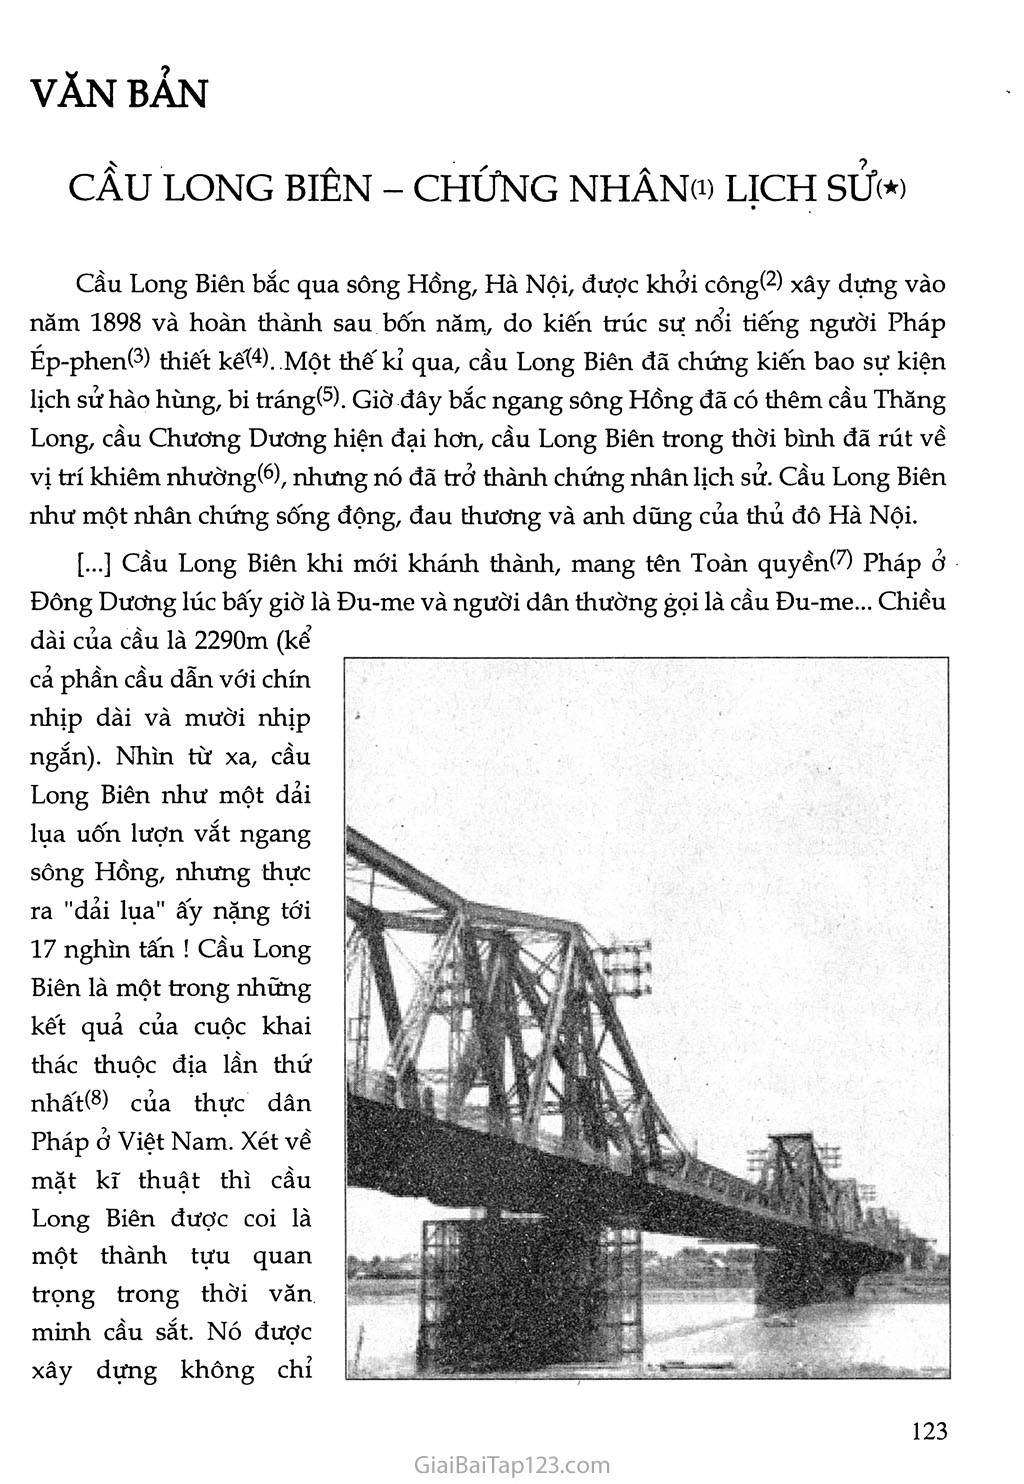 Cầu Long Biên - chứng nhân lịch sử trang 2